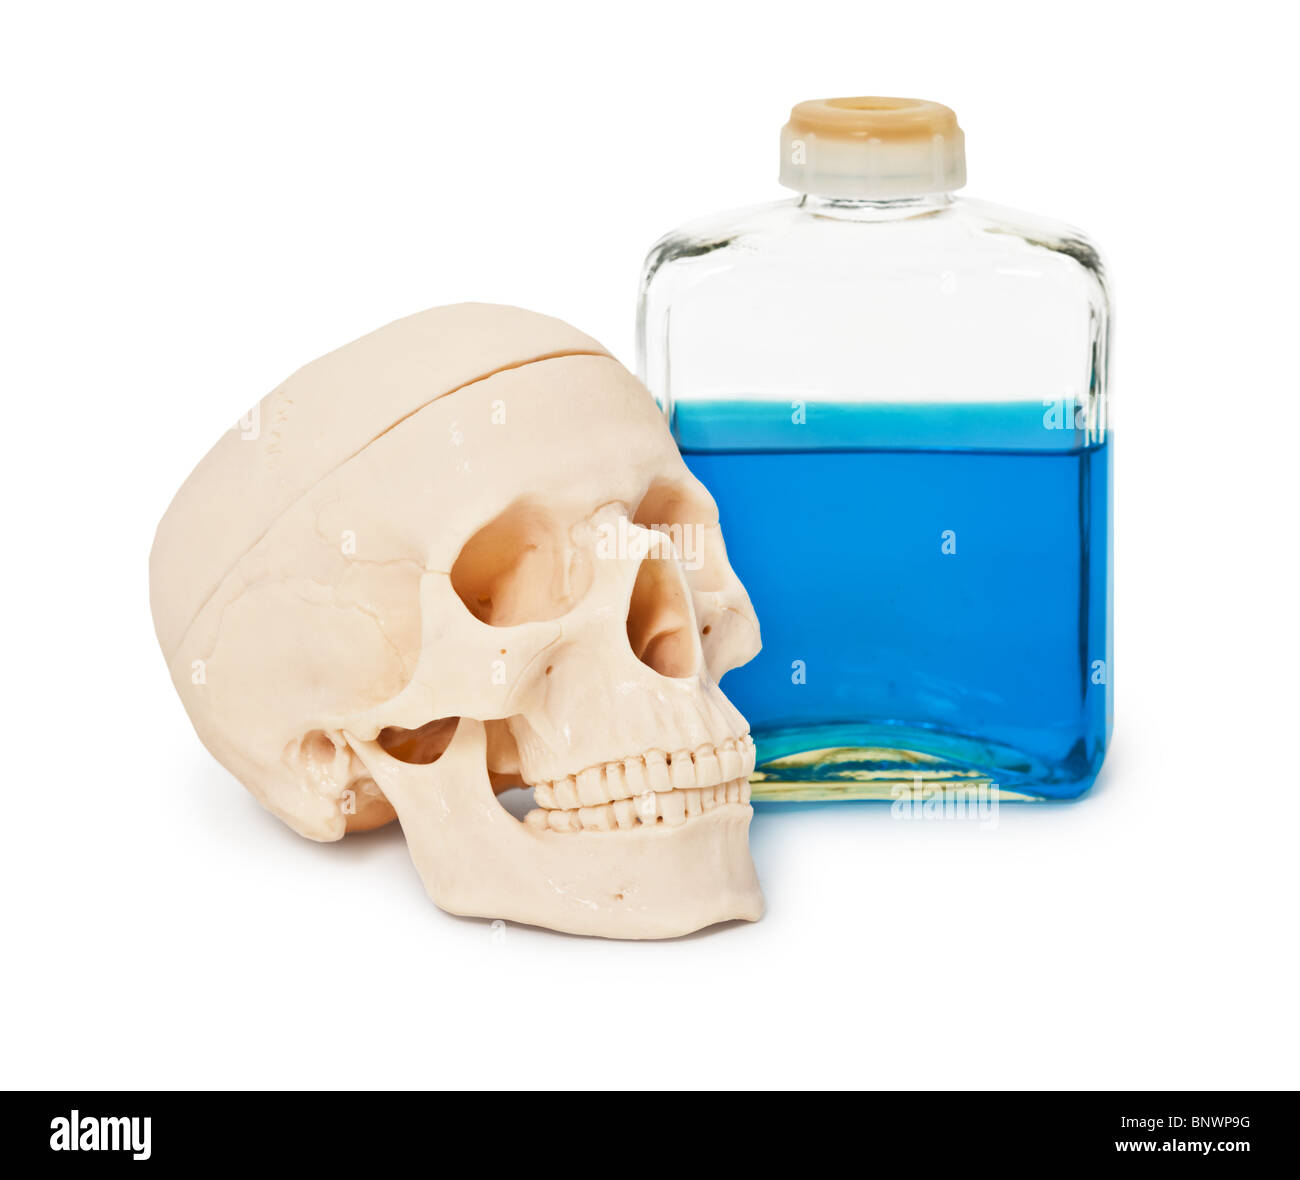 Résumé La nature morte - une grande bouteille avec un liquide toxique bleu foncé et un crâne humain Banque D'Images